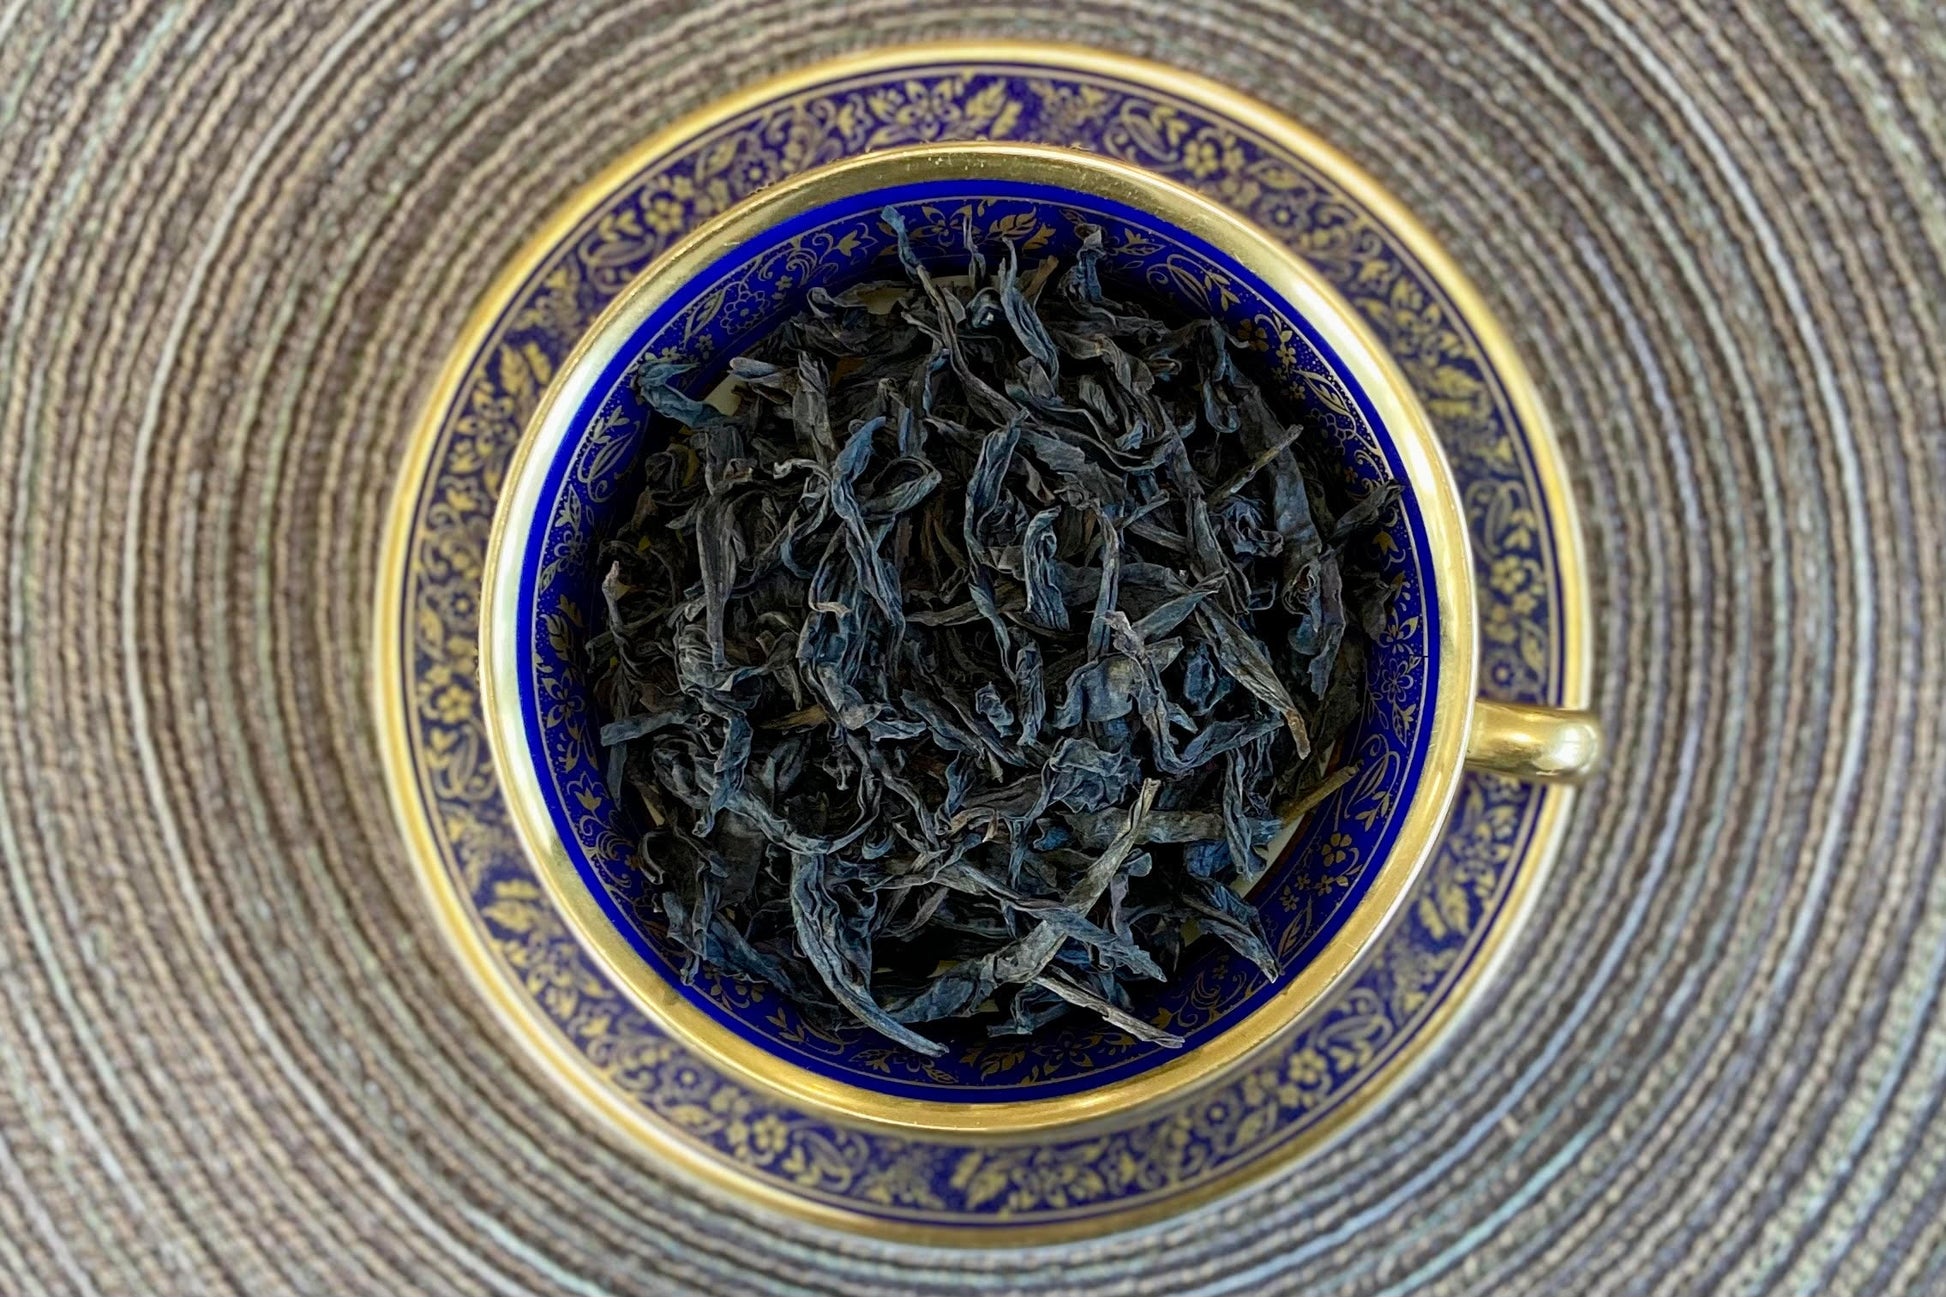 teacup full of twisted dark brown tea leaves